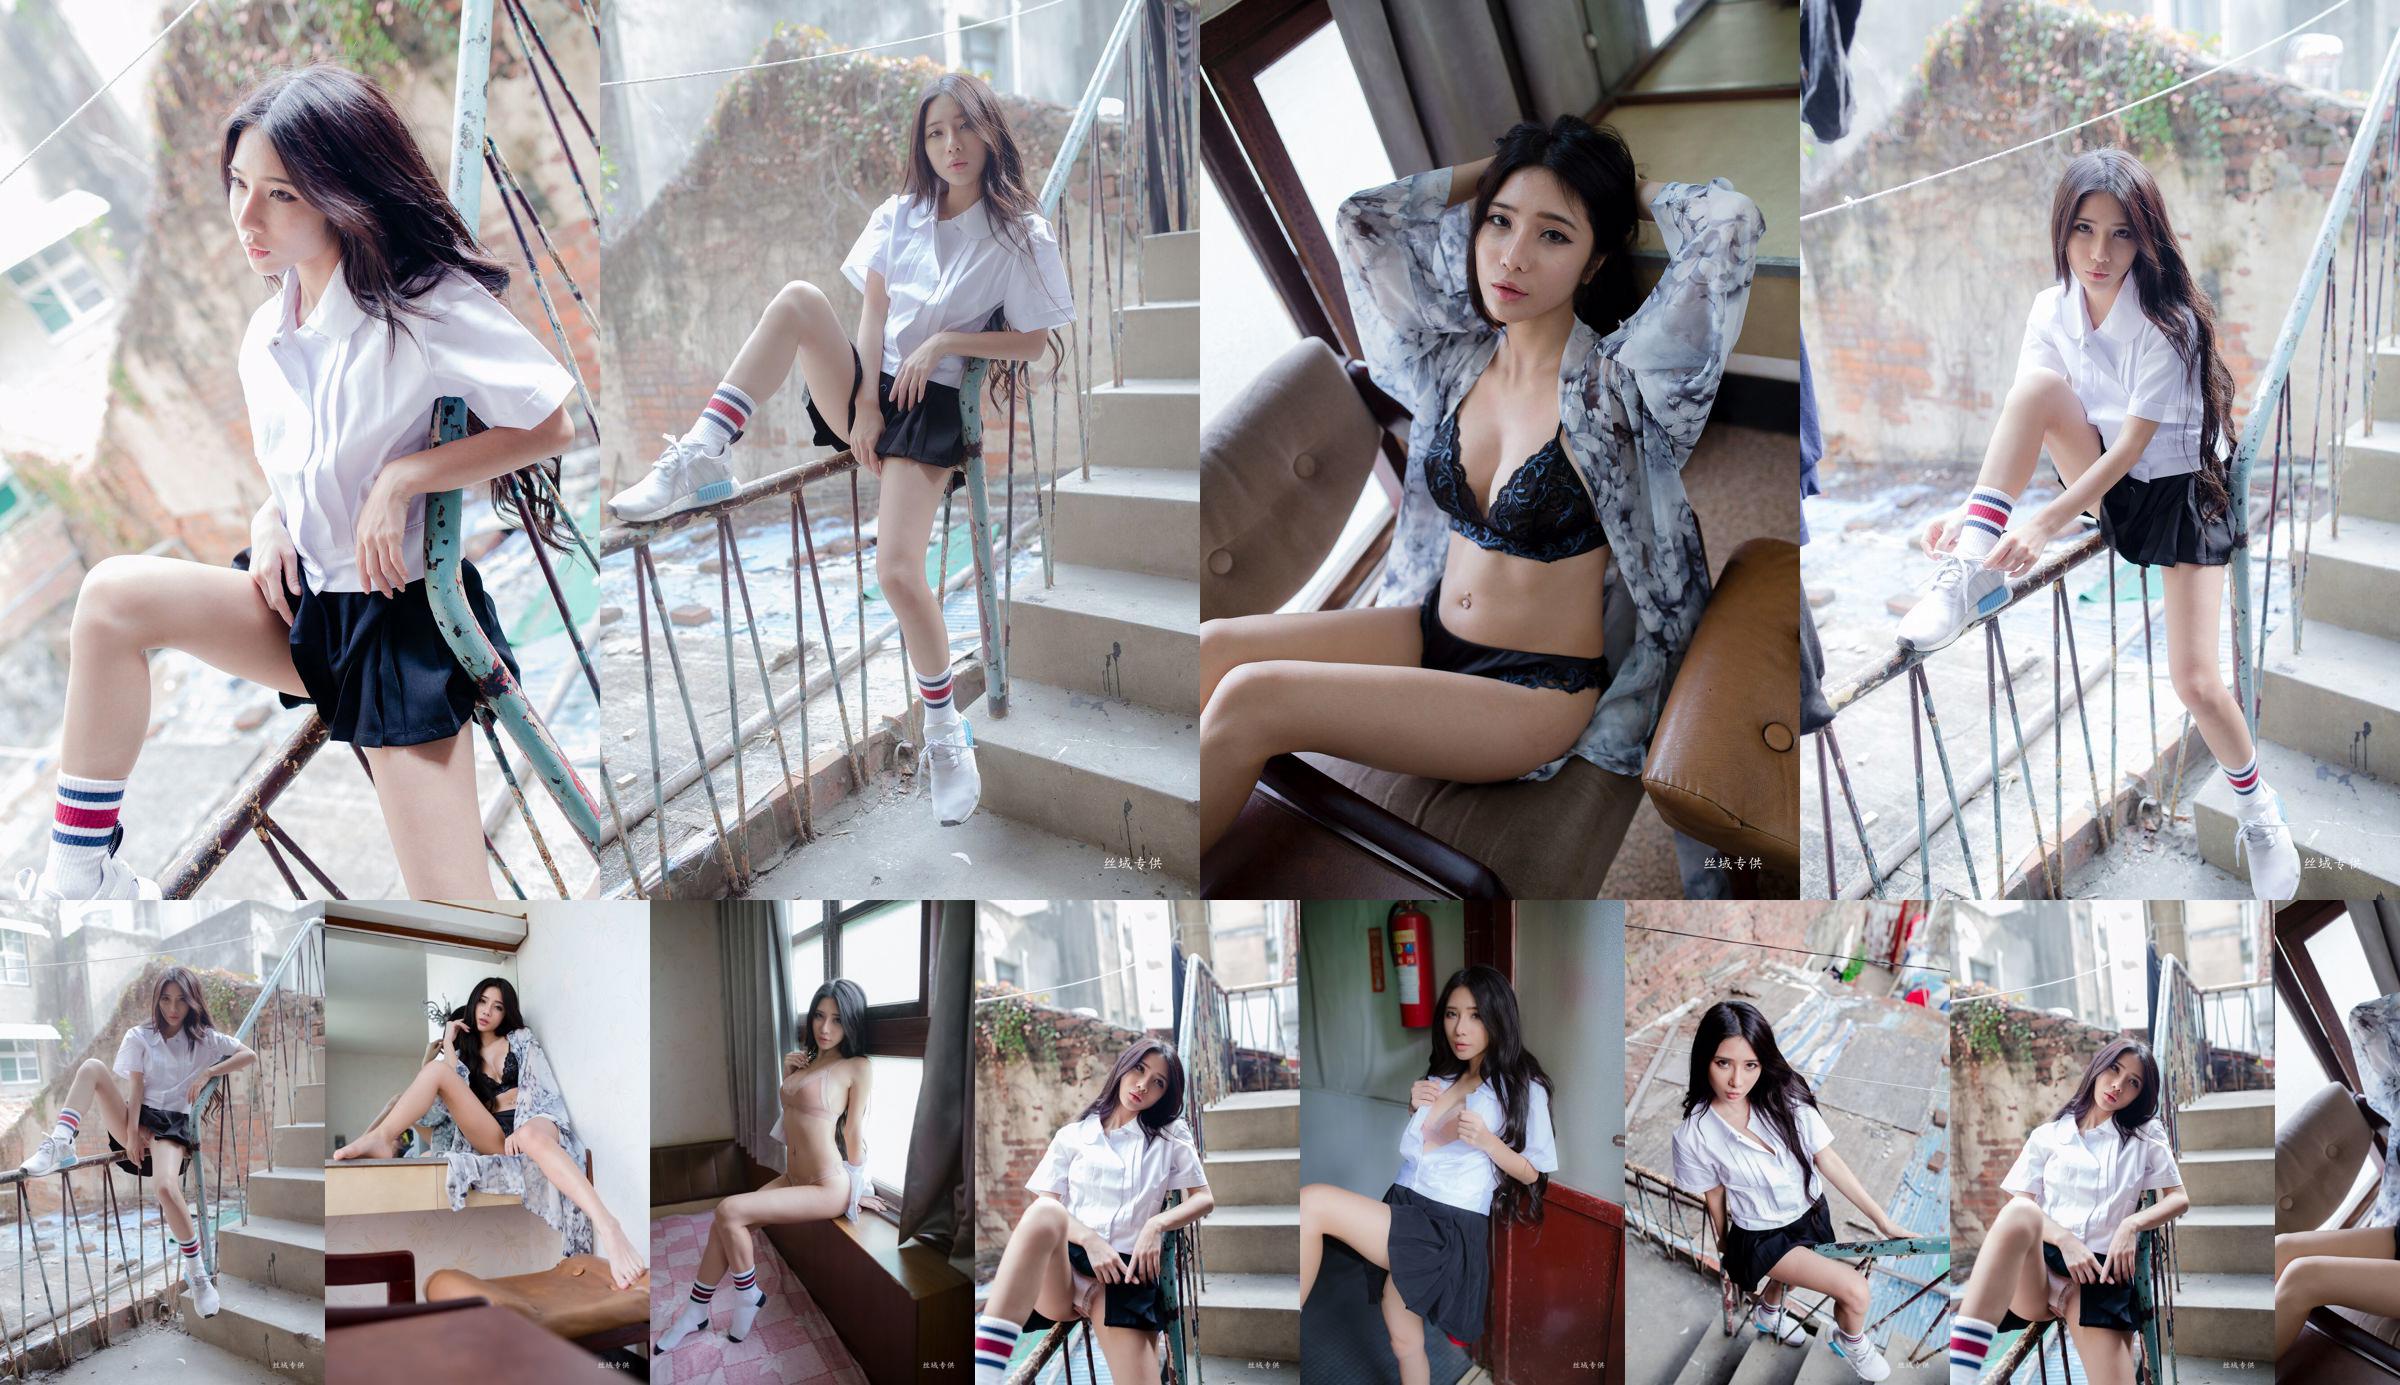 [Taiwan Zhengmei] Shen Qiqi "Outside Shooting of Sailor Suit Underwear" No.cac0e0 Page 89